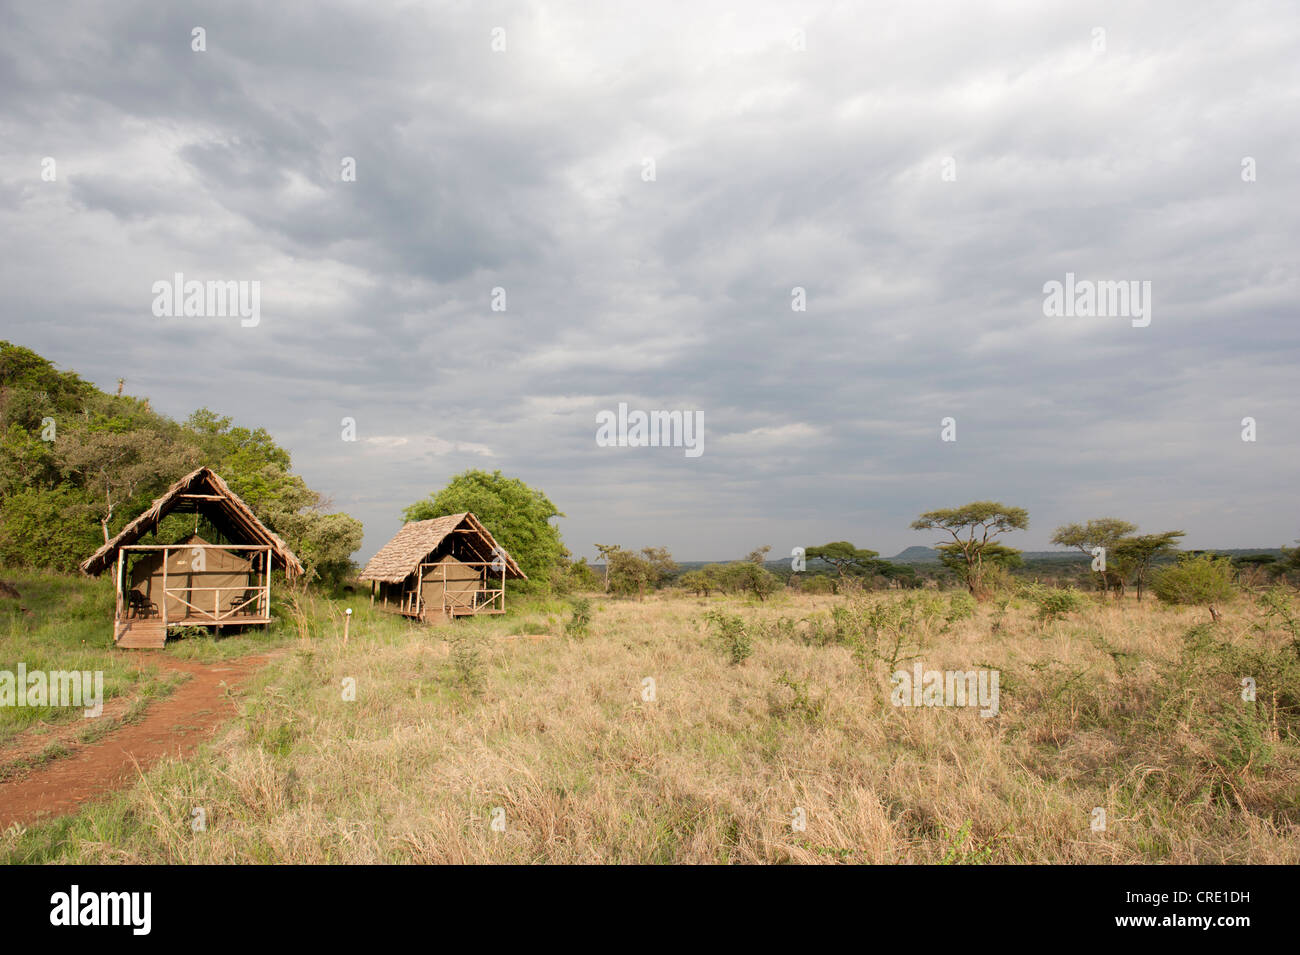 Ikoma Camp sauvage, couverts tentes dans la grande savane, le Parc National du Serengeti, Tanzanie, Afrique orientale, Afrique du Sud Banque D'Images